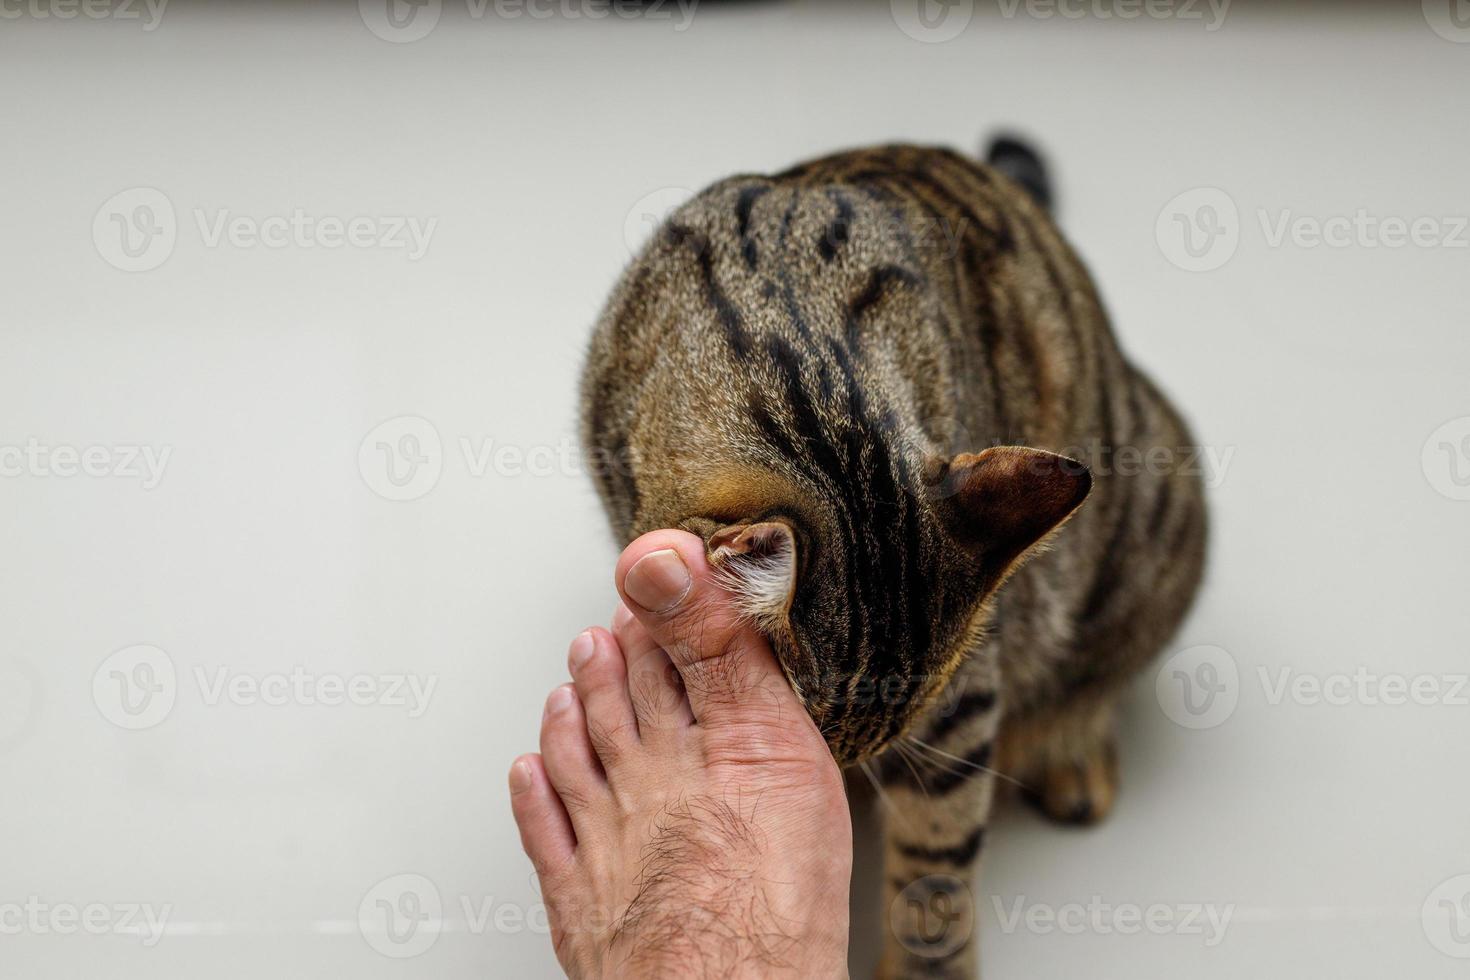 kattengezicht dat over de voeten van mensen wrijft, gestreepte kat. foto